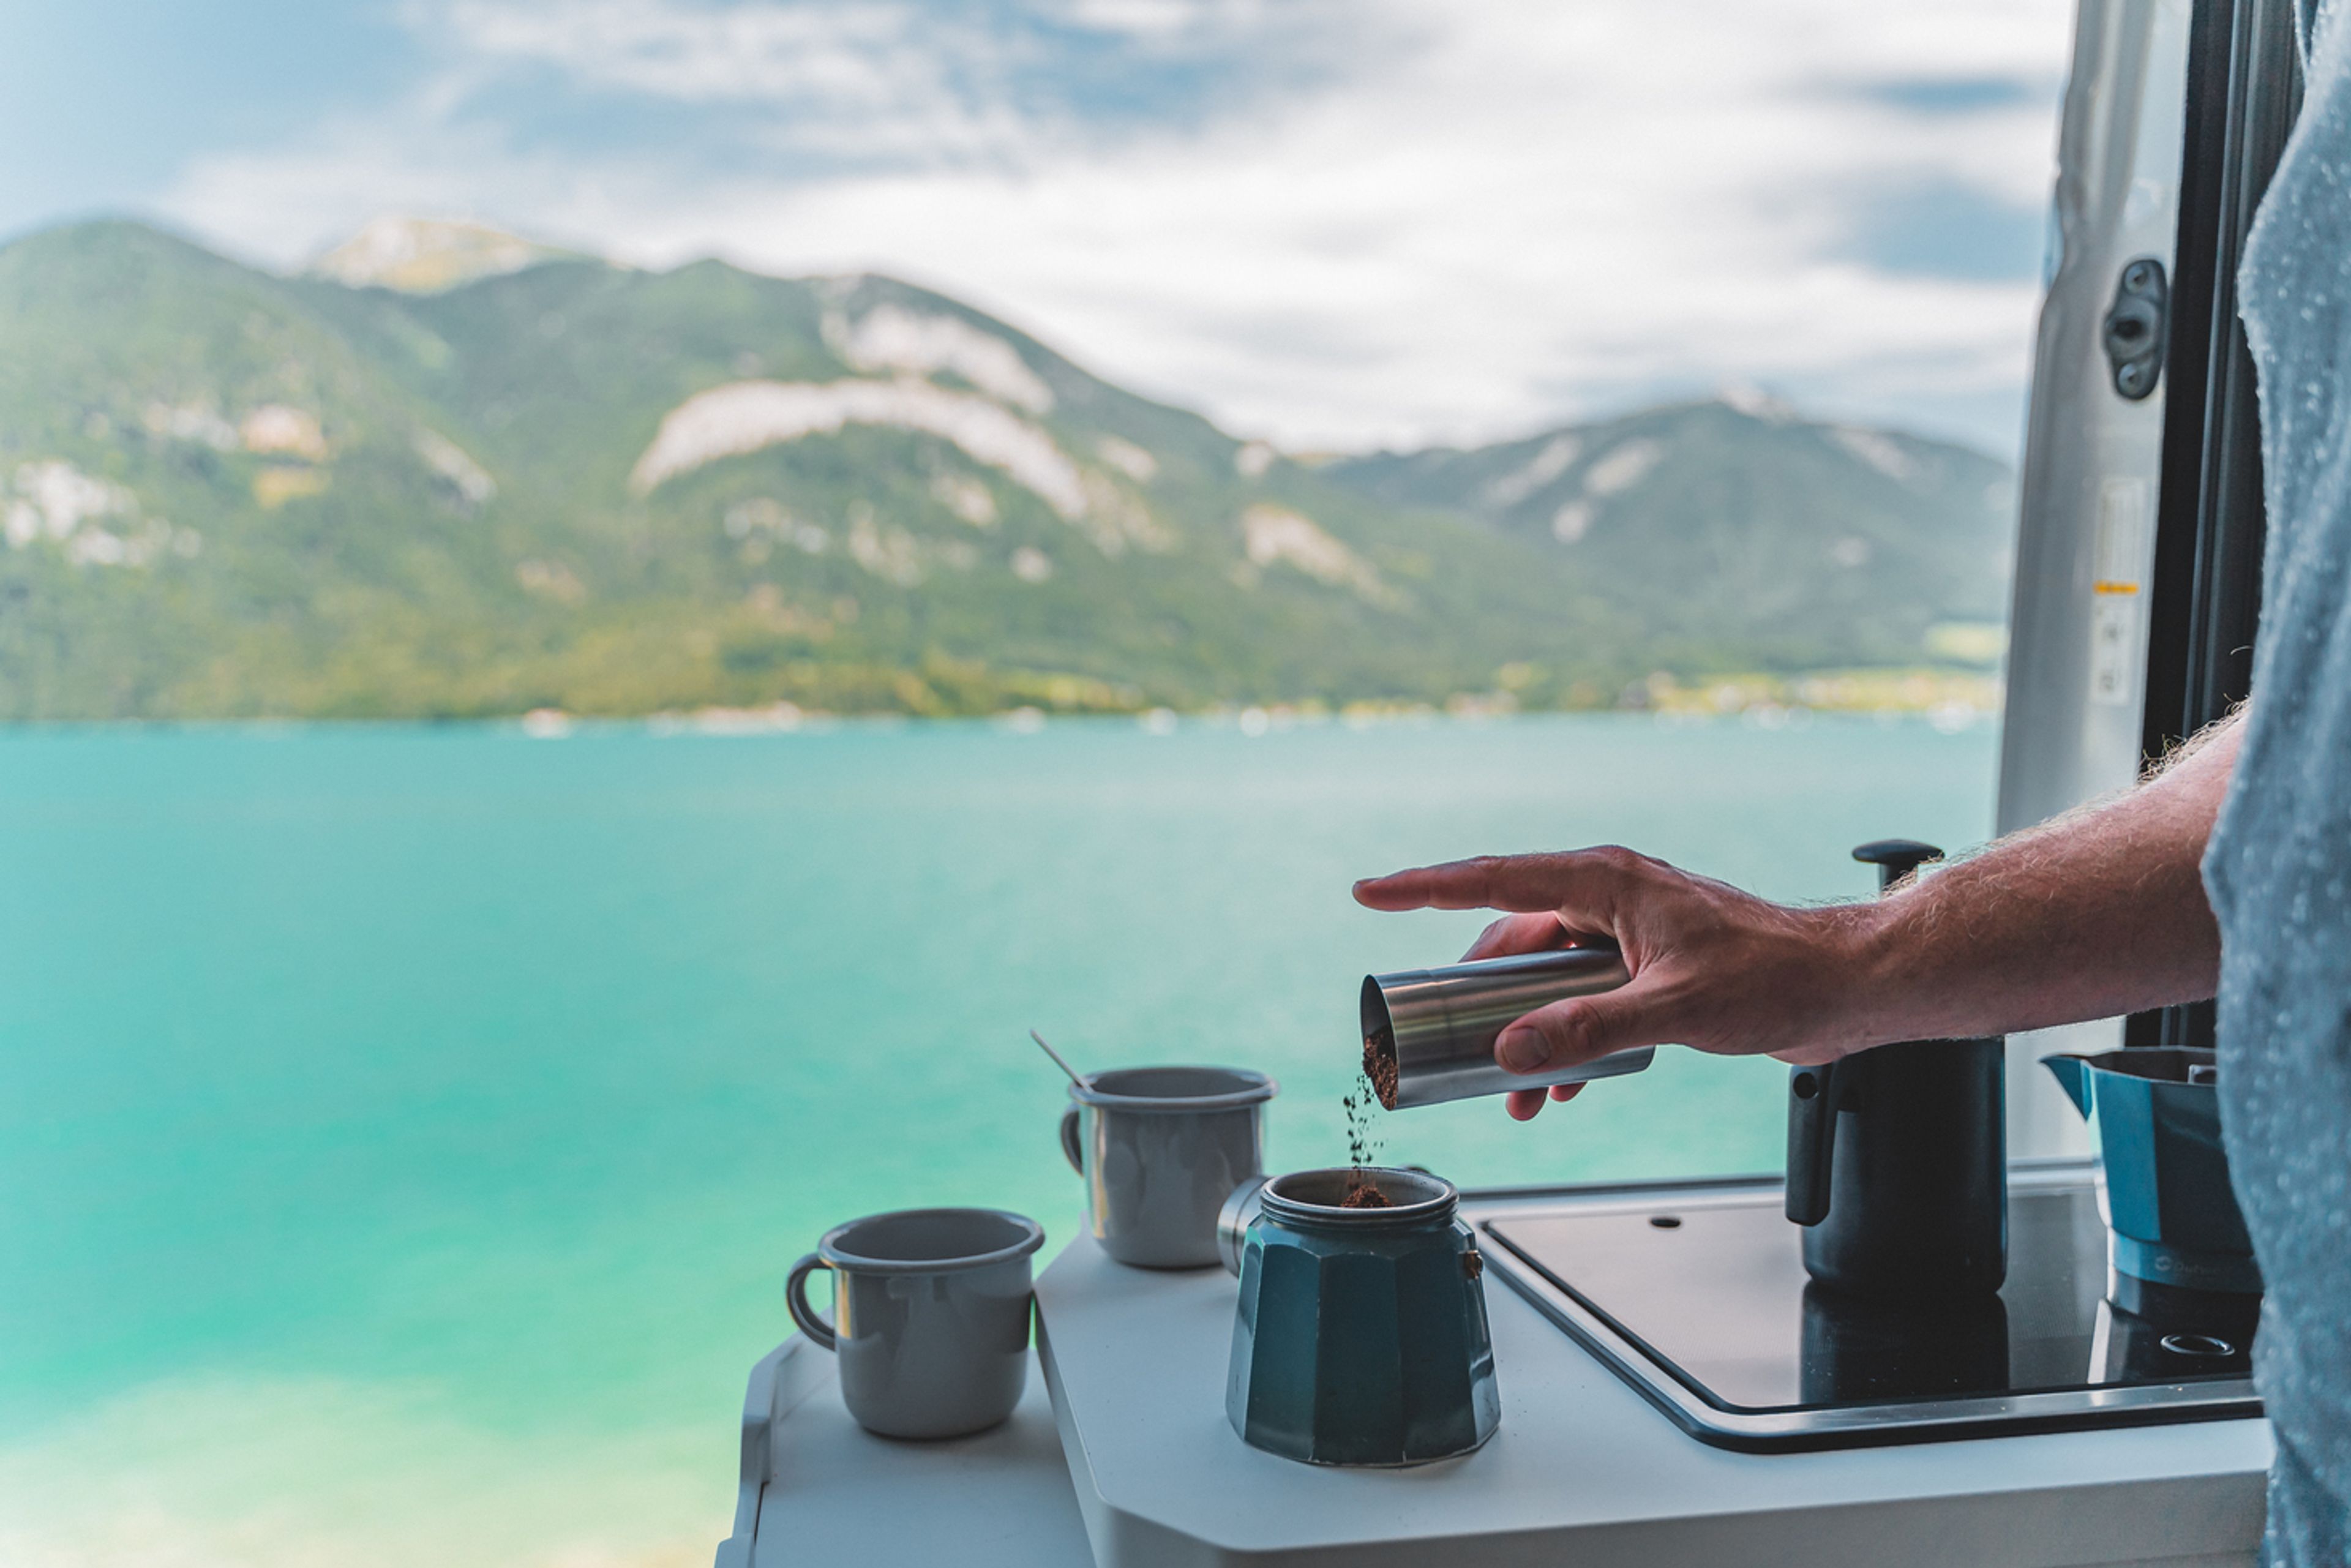 Preparare il caffè con la moka in un camper con vista su un lago e una splendida catena montuosa